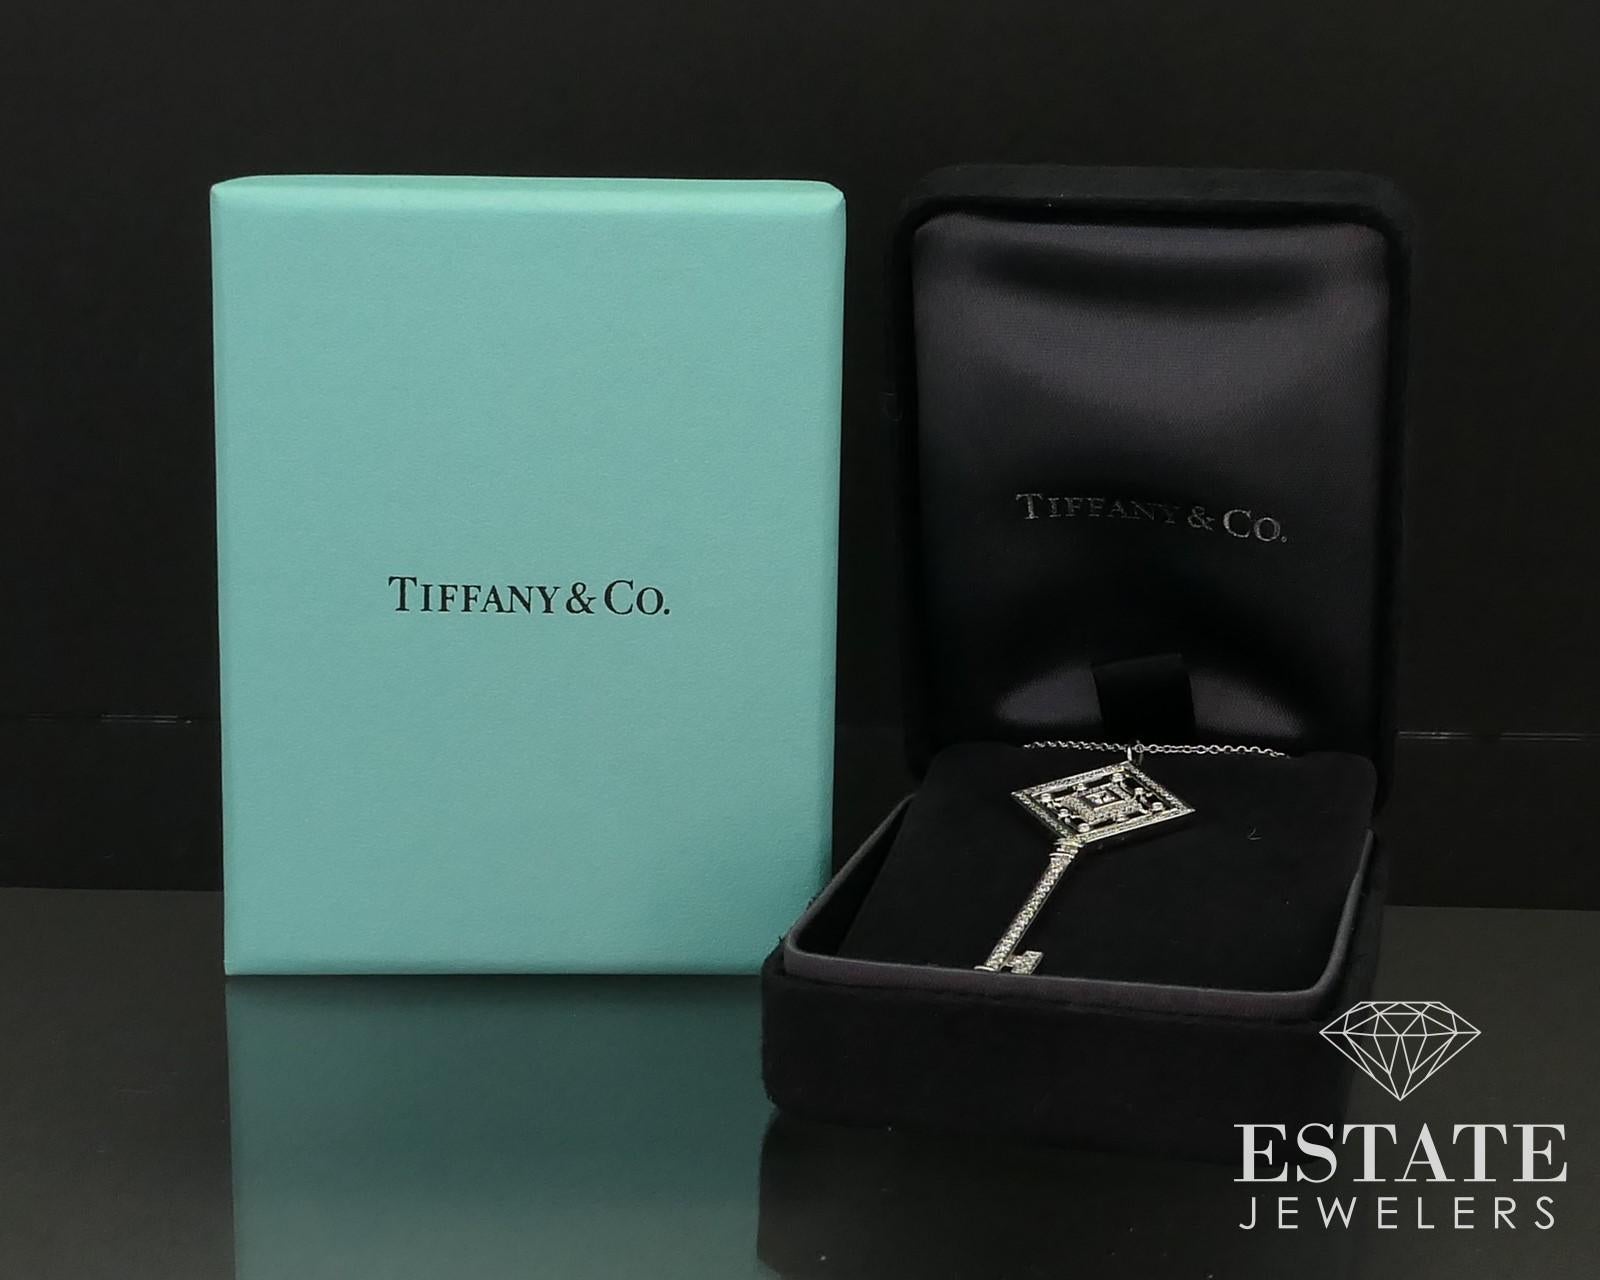 Collier étincelant de Tiffany & Co. avec un grand pendentif en forme de clé de la ligne Grace. Environ 0,59ctw de diamants de pureté VS et de couleur G. Chaîne tiffany de 18